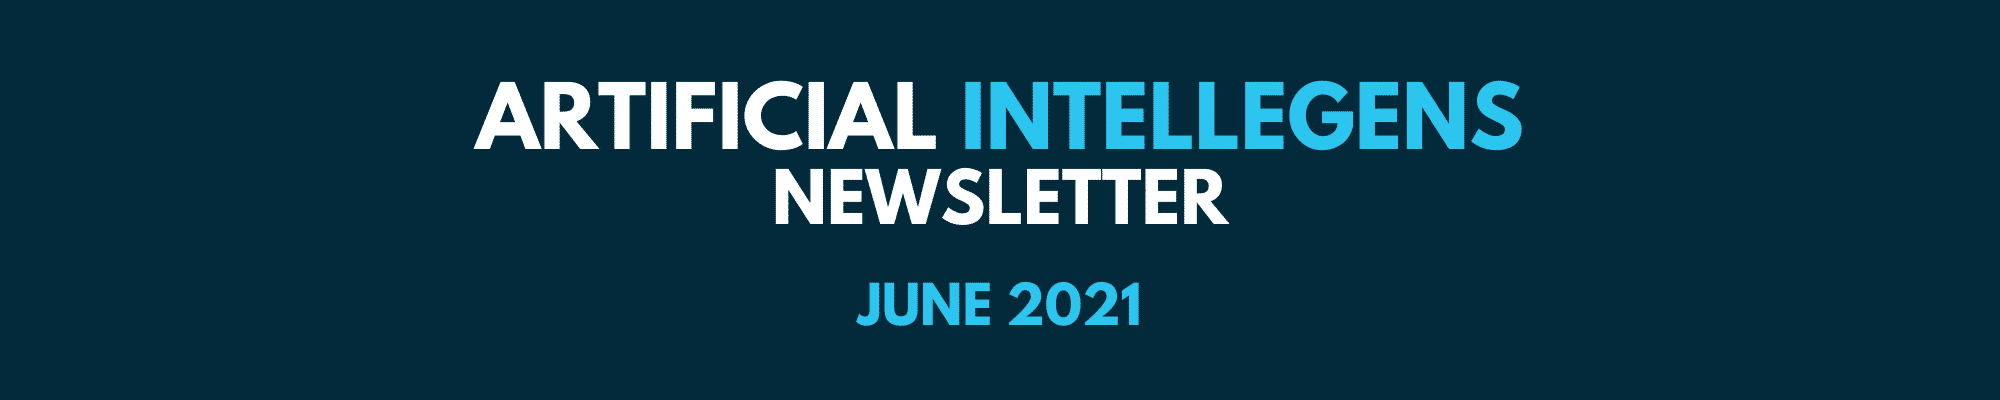 Newsletter June 2021